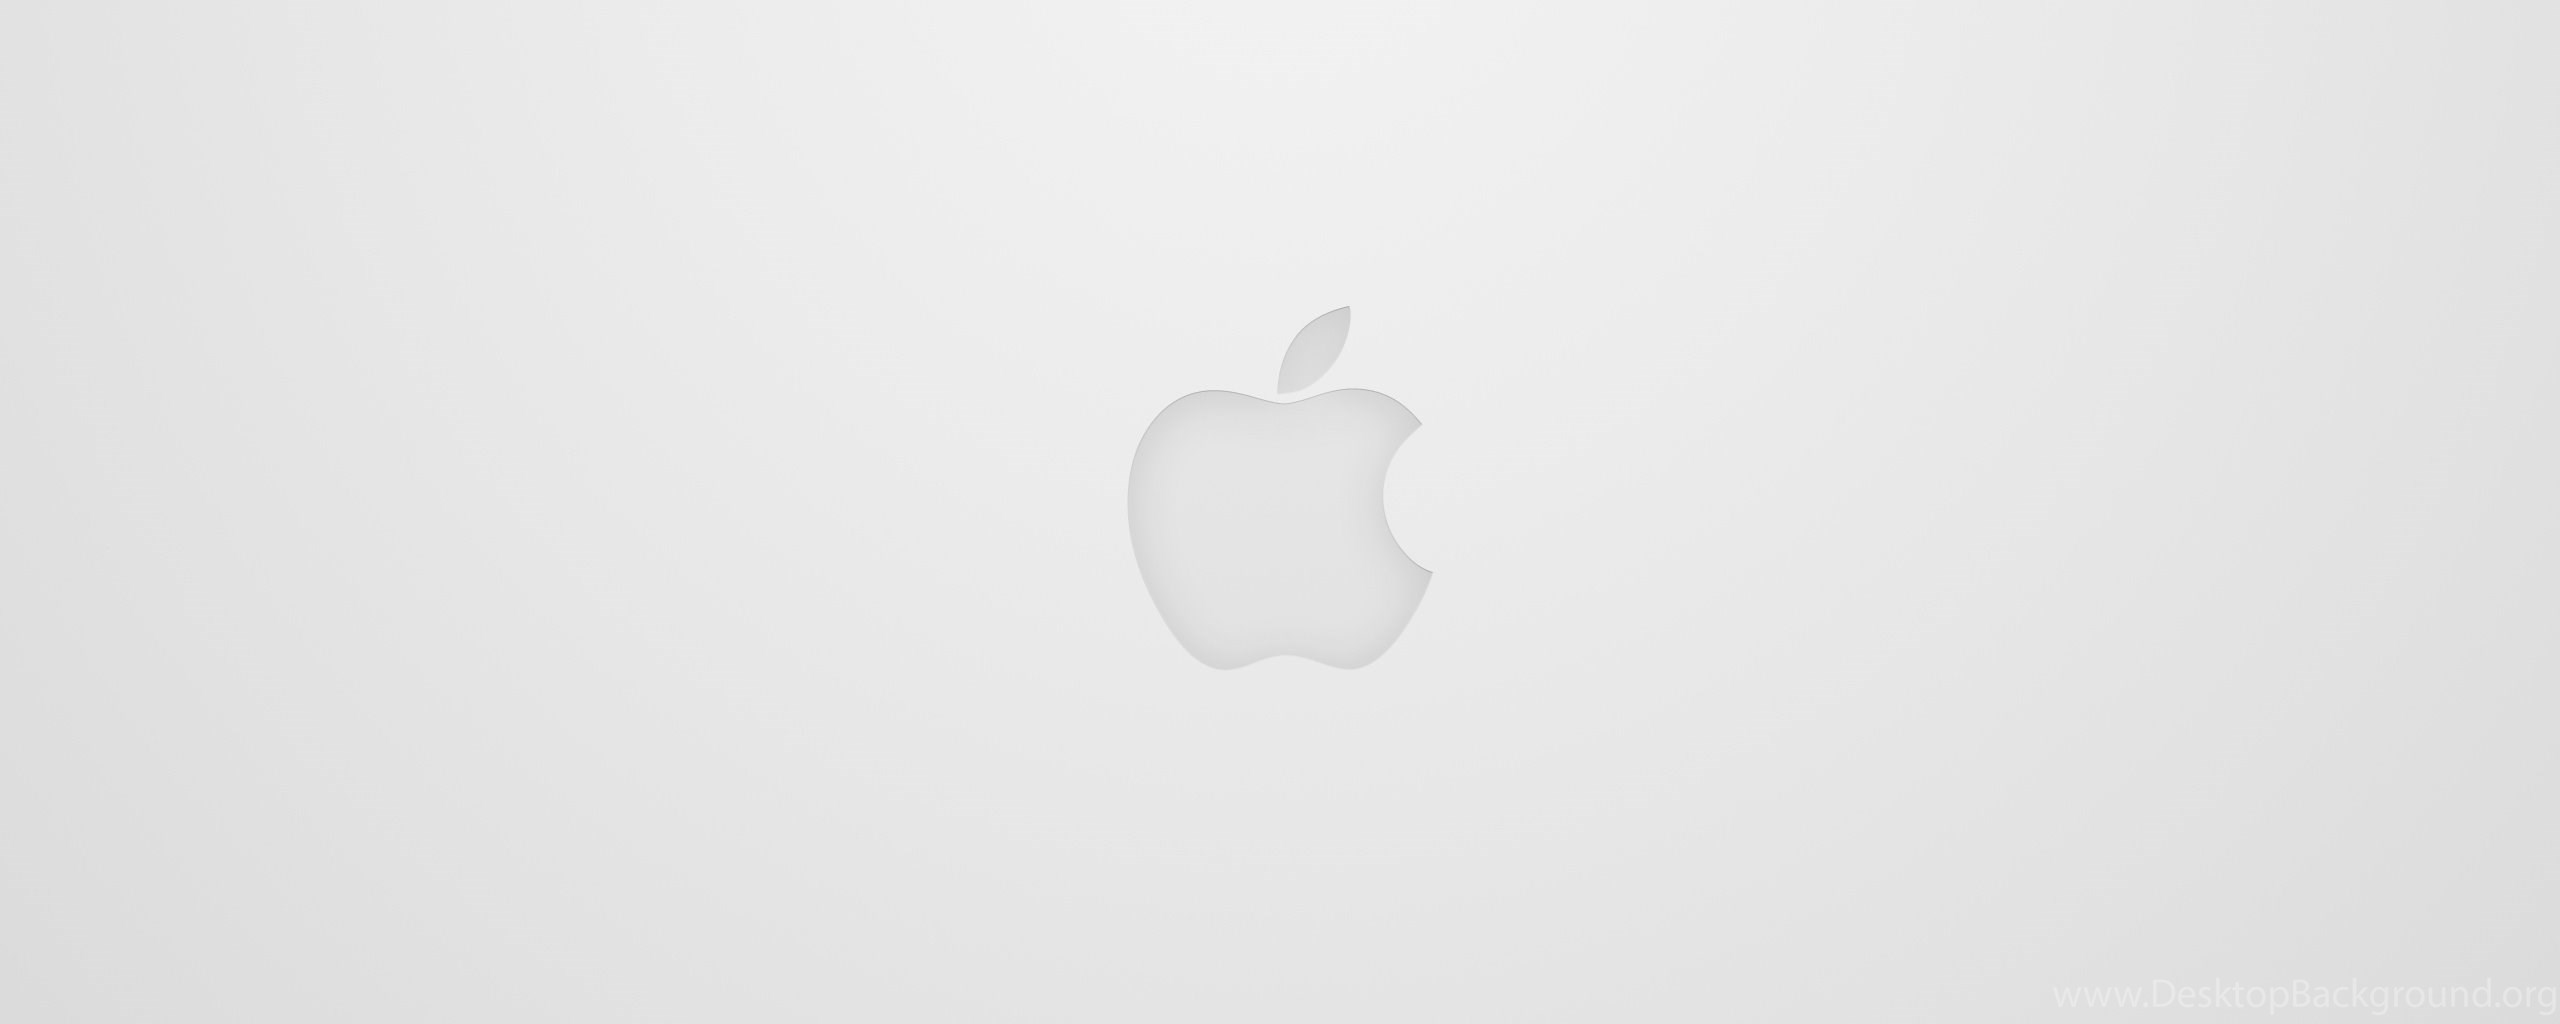 Apple алюминий цвета. Apple на белом фоне. Белое яблоко на белом фоне. Фон для презентации Apple. Apple обои белые.